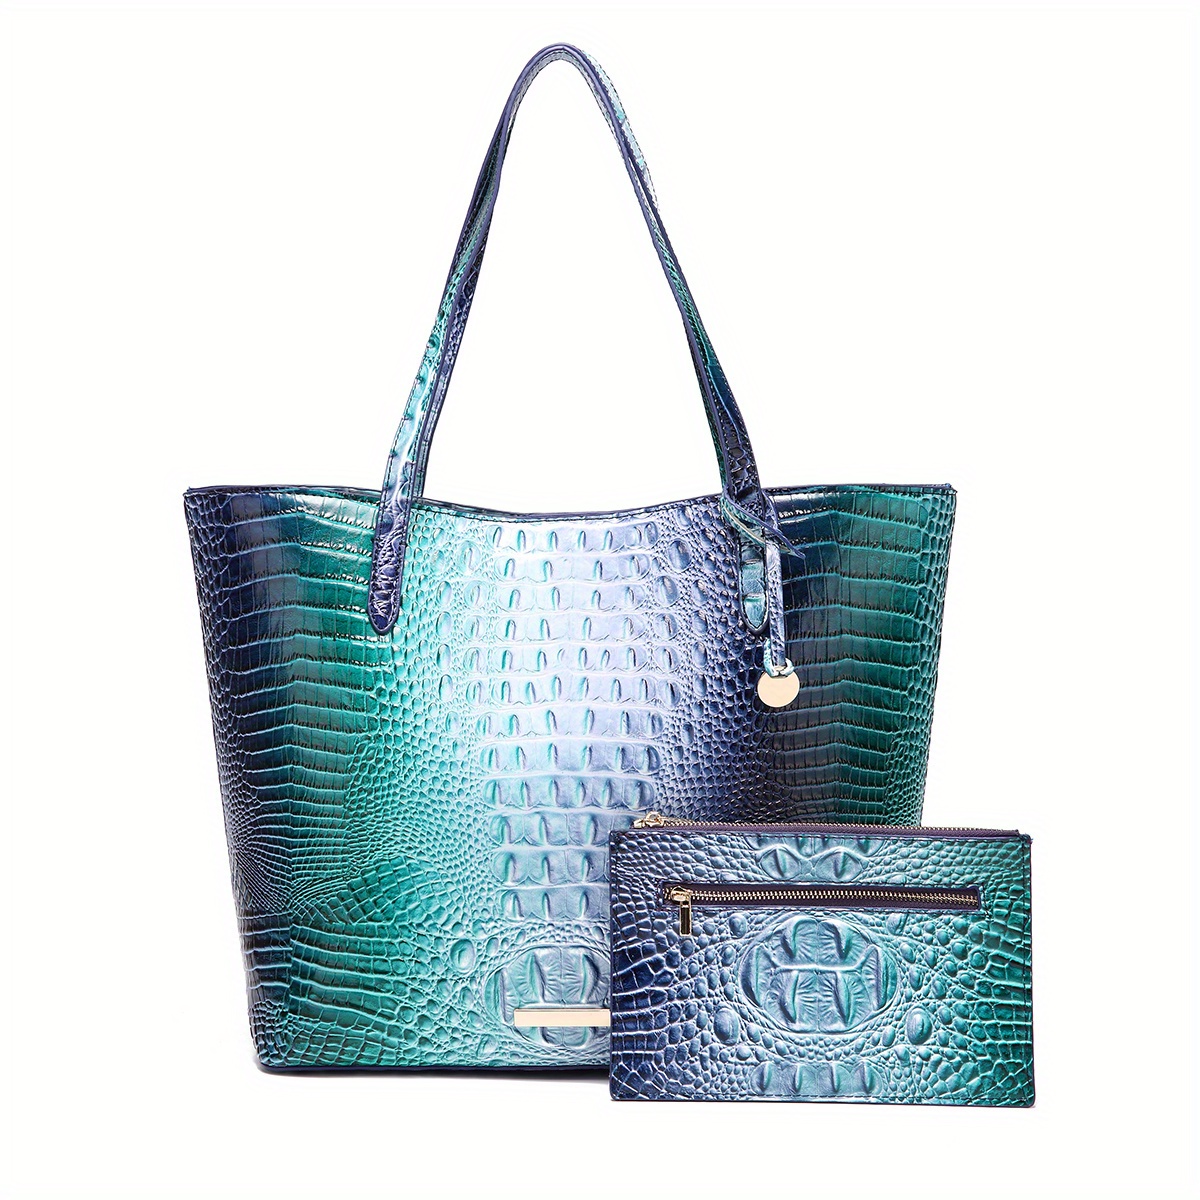 Turquoise Brahmin Alligator Textured Embossed Leather Handbag 